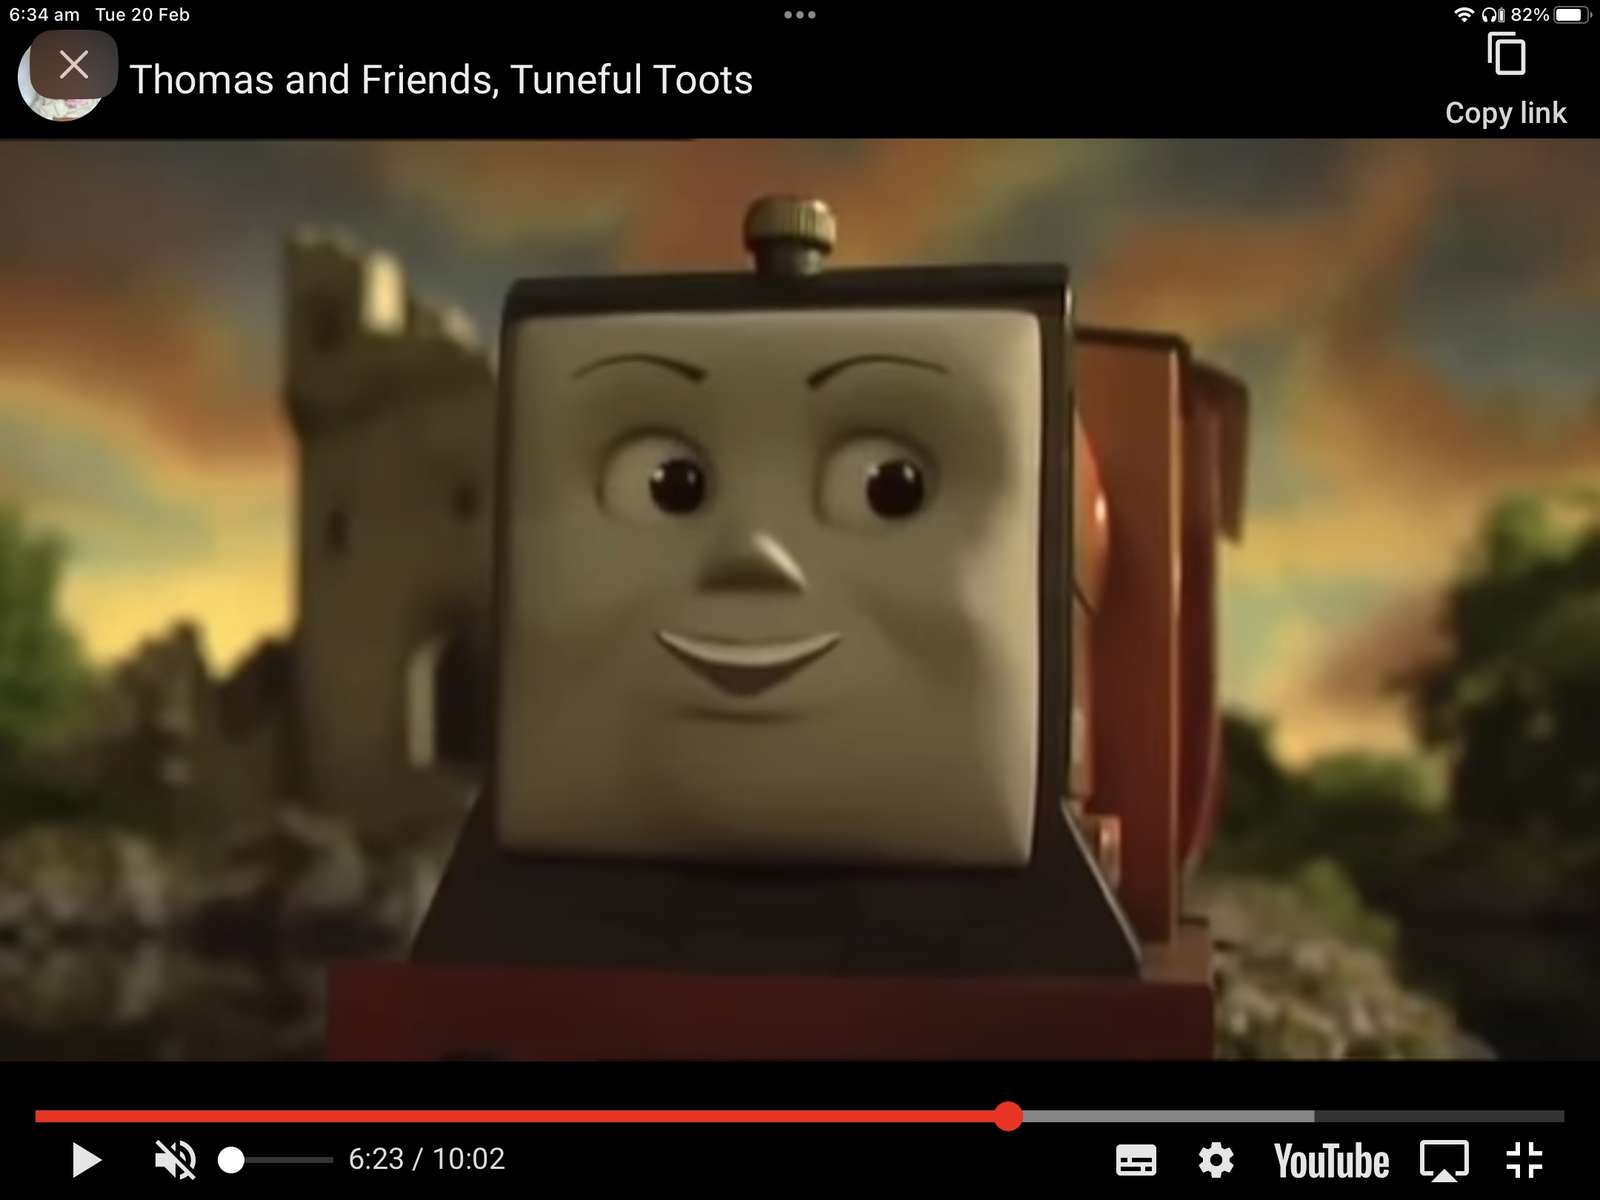 Thomas y sus amigos Toots melodiosos puzzle online a partir de foto